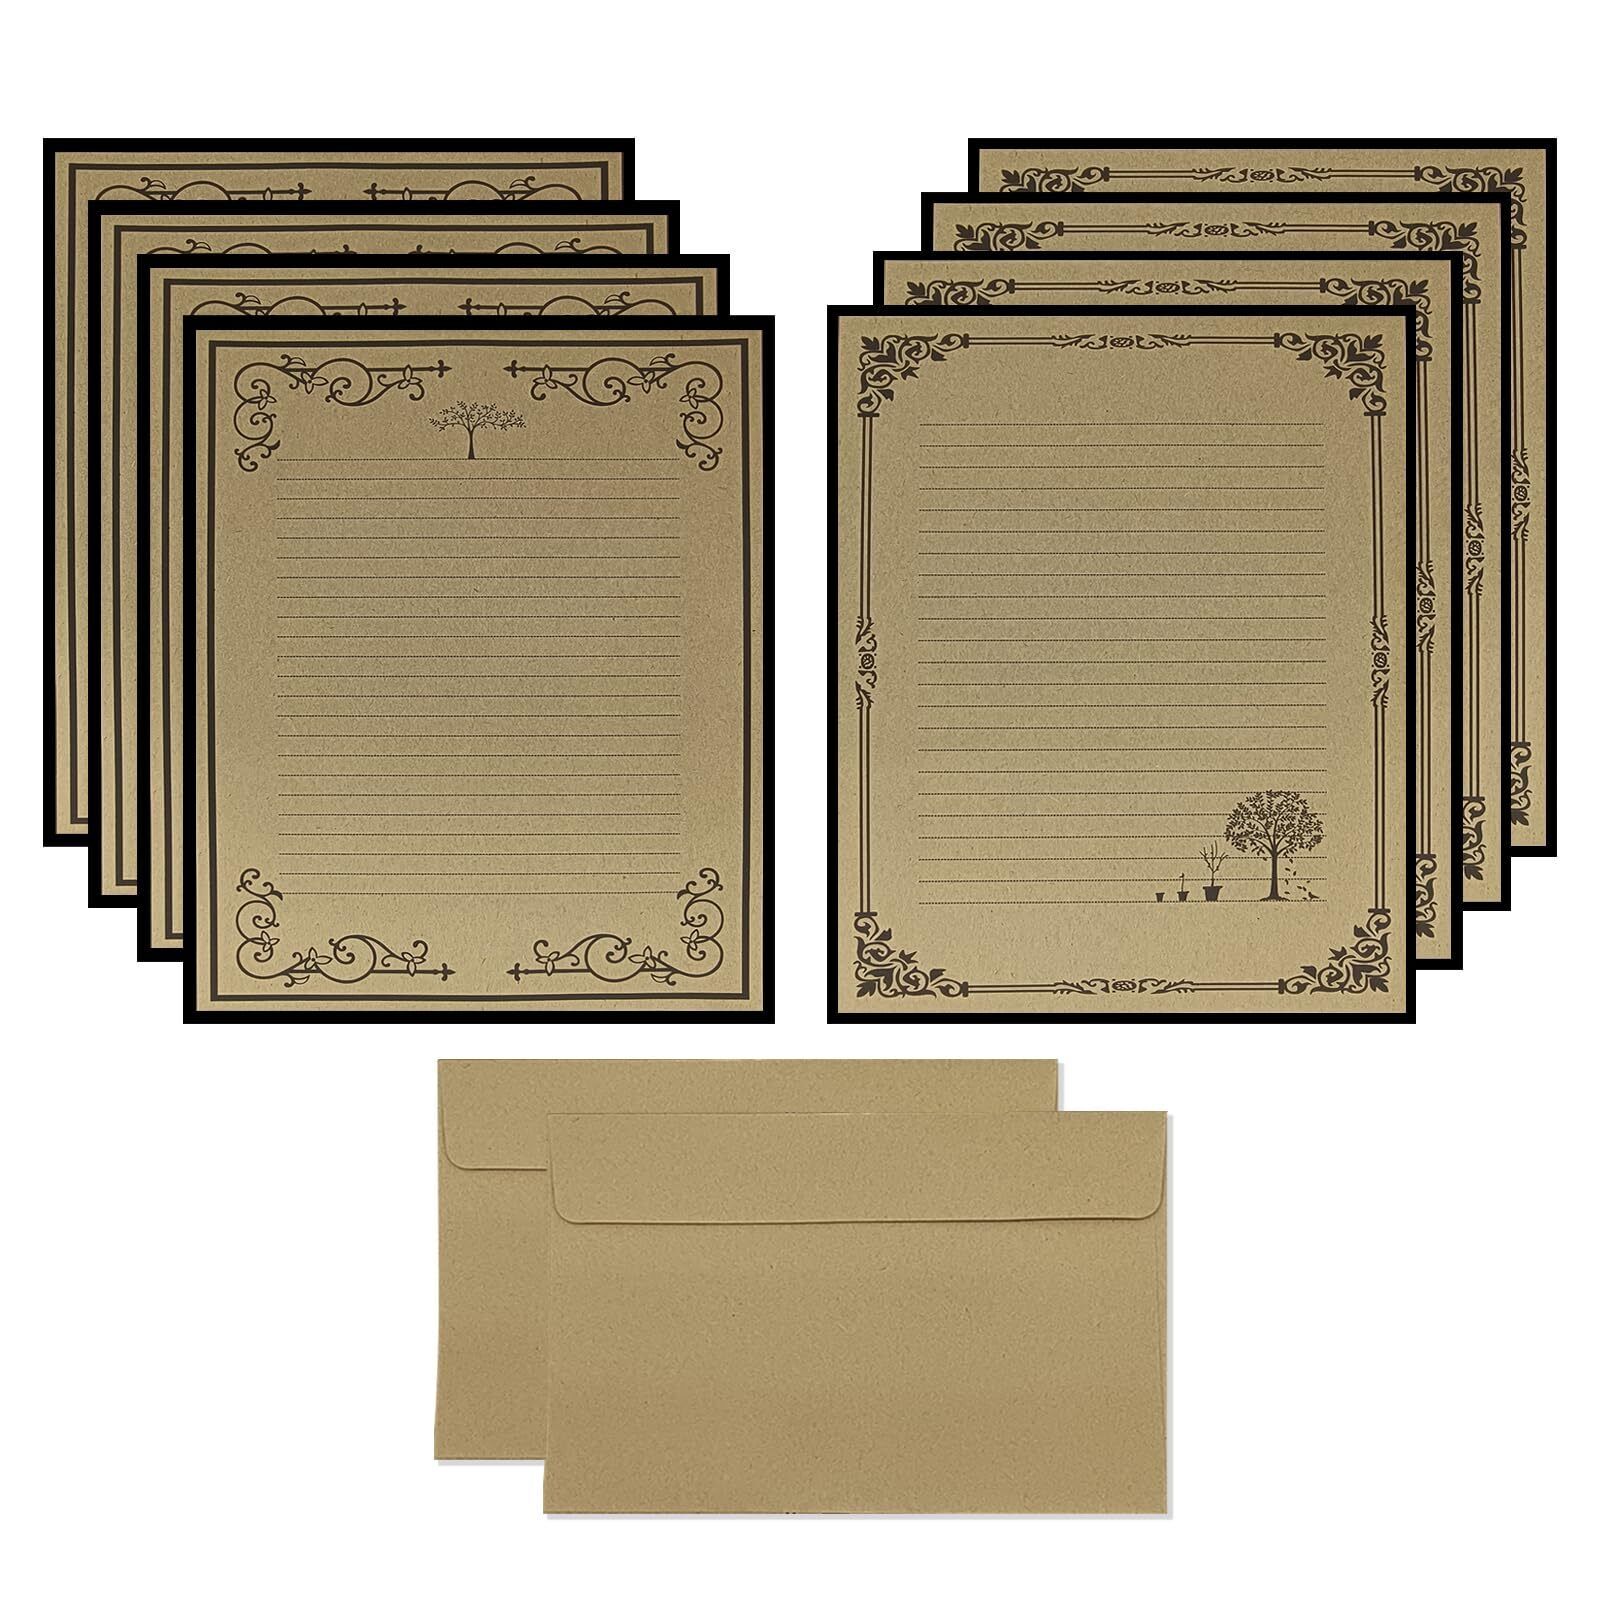 Total 72PCS Vintage Design Stationary Paper and Envelope Set - 48 Lined Lette